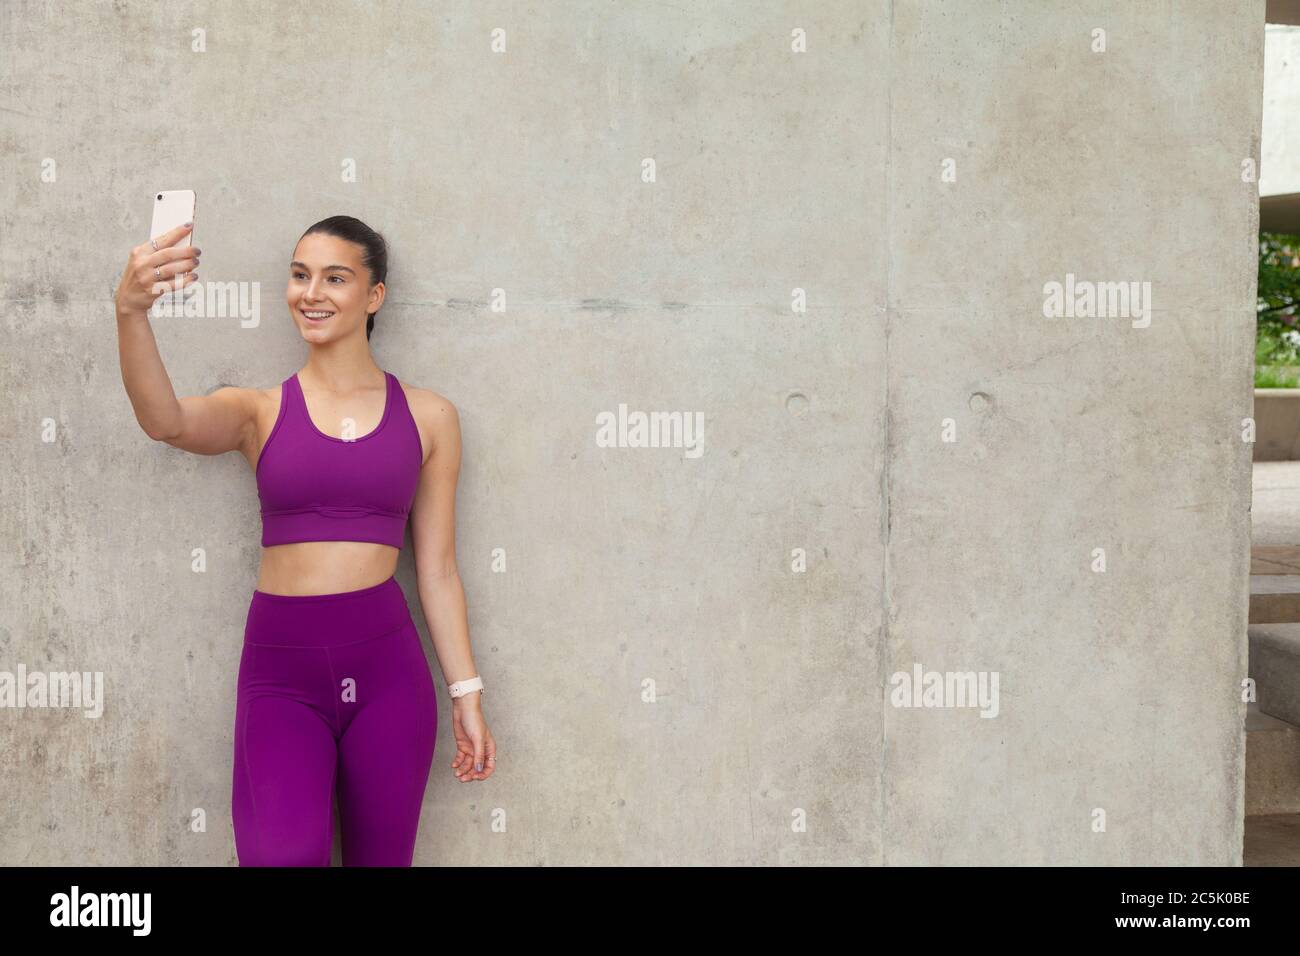 Eine attraktive Frau, die Sportkleidung trägt, die sich an eine Betonwand lehnt und ein Mobiltelefon hochhält. Stockfoto